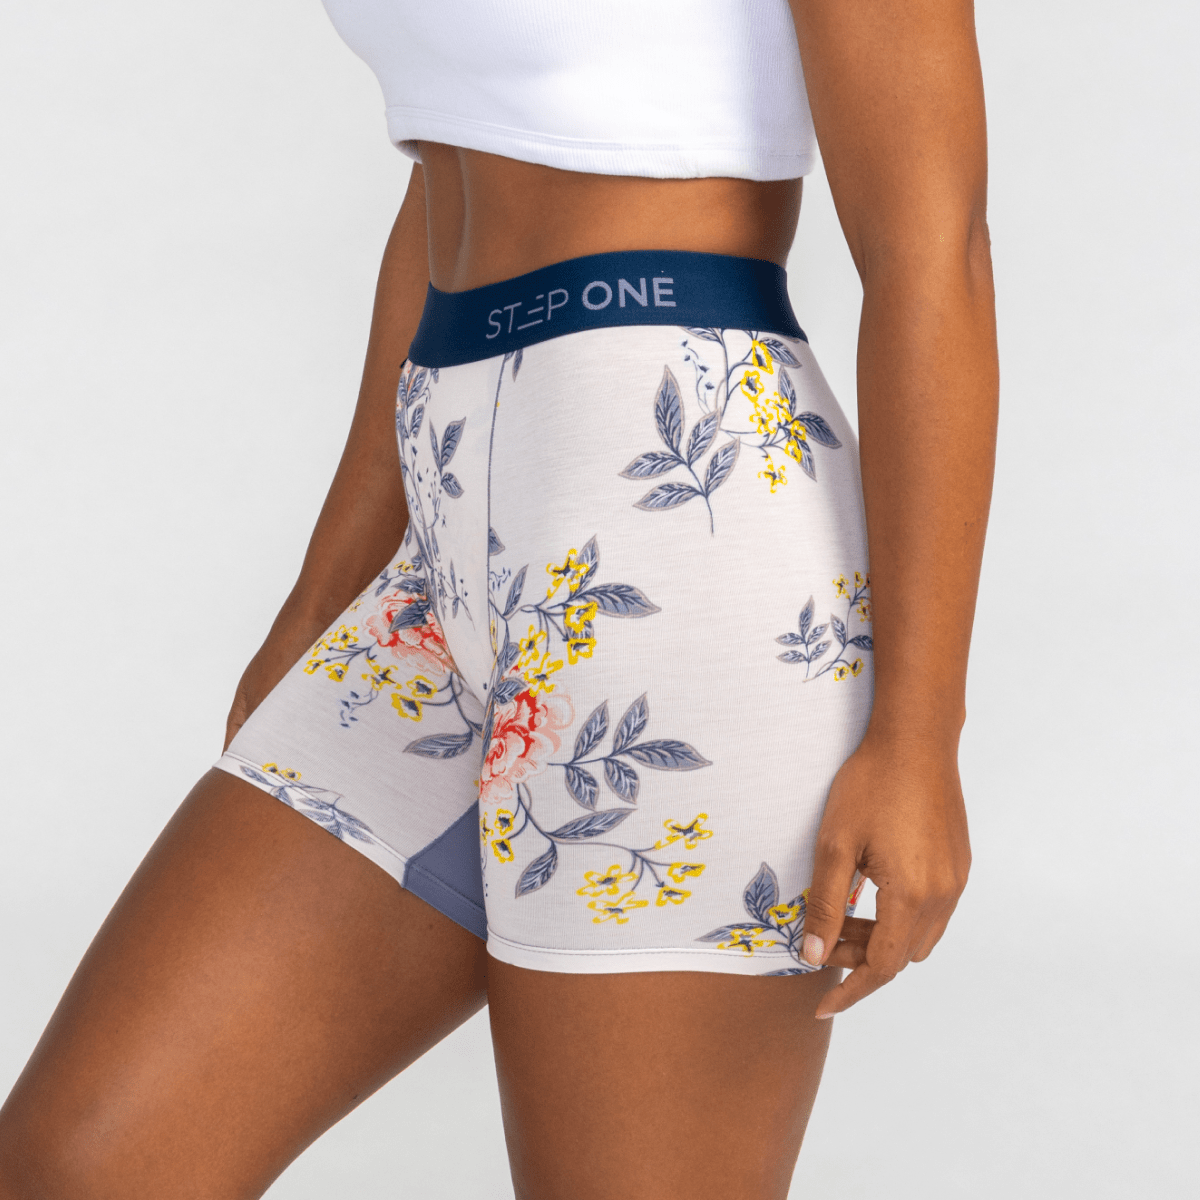 Women's Body Shorts - Women's Colourful Underwear